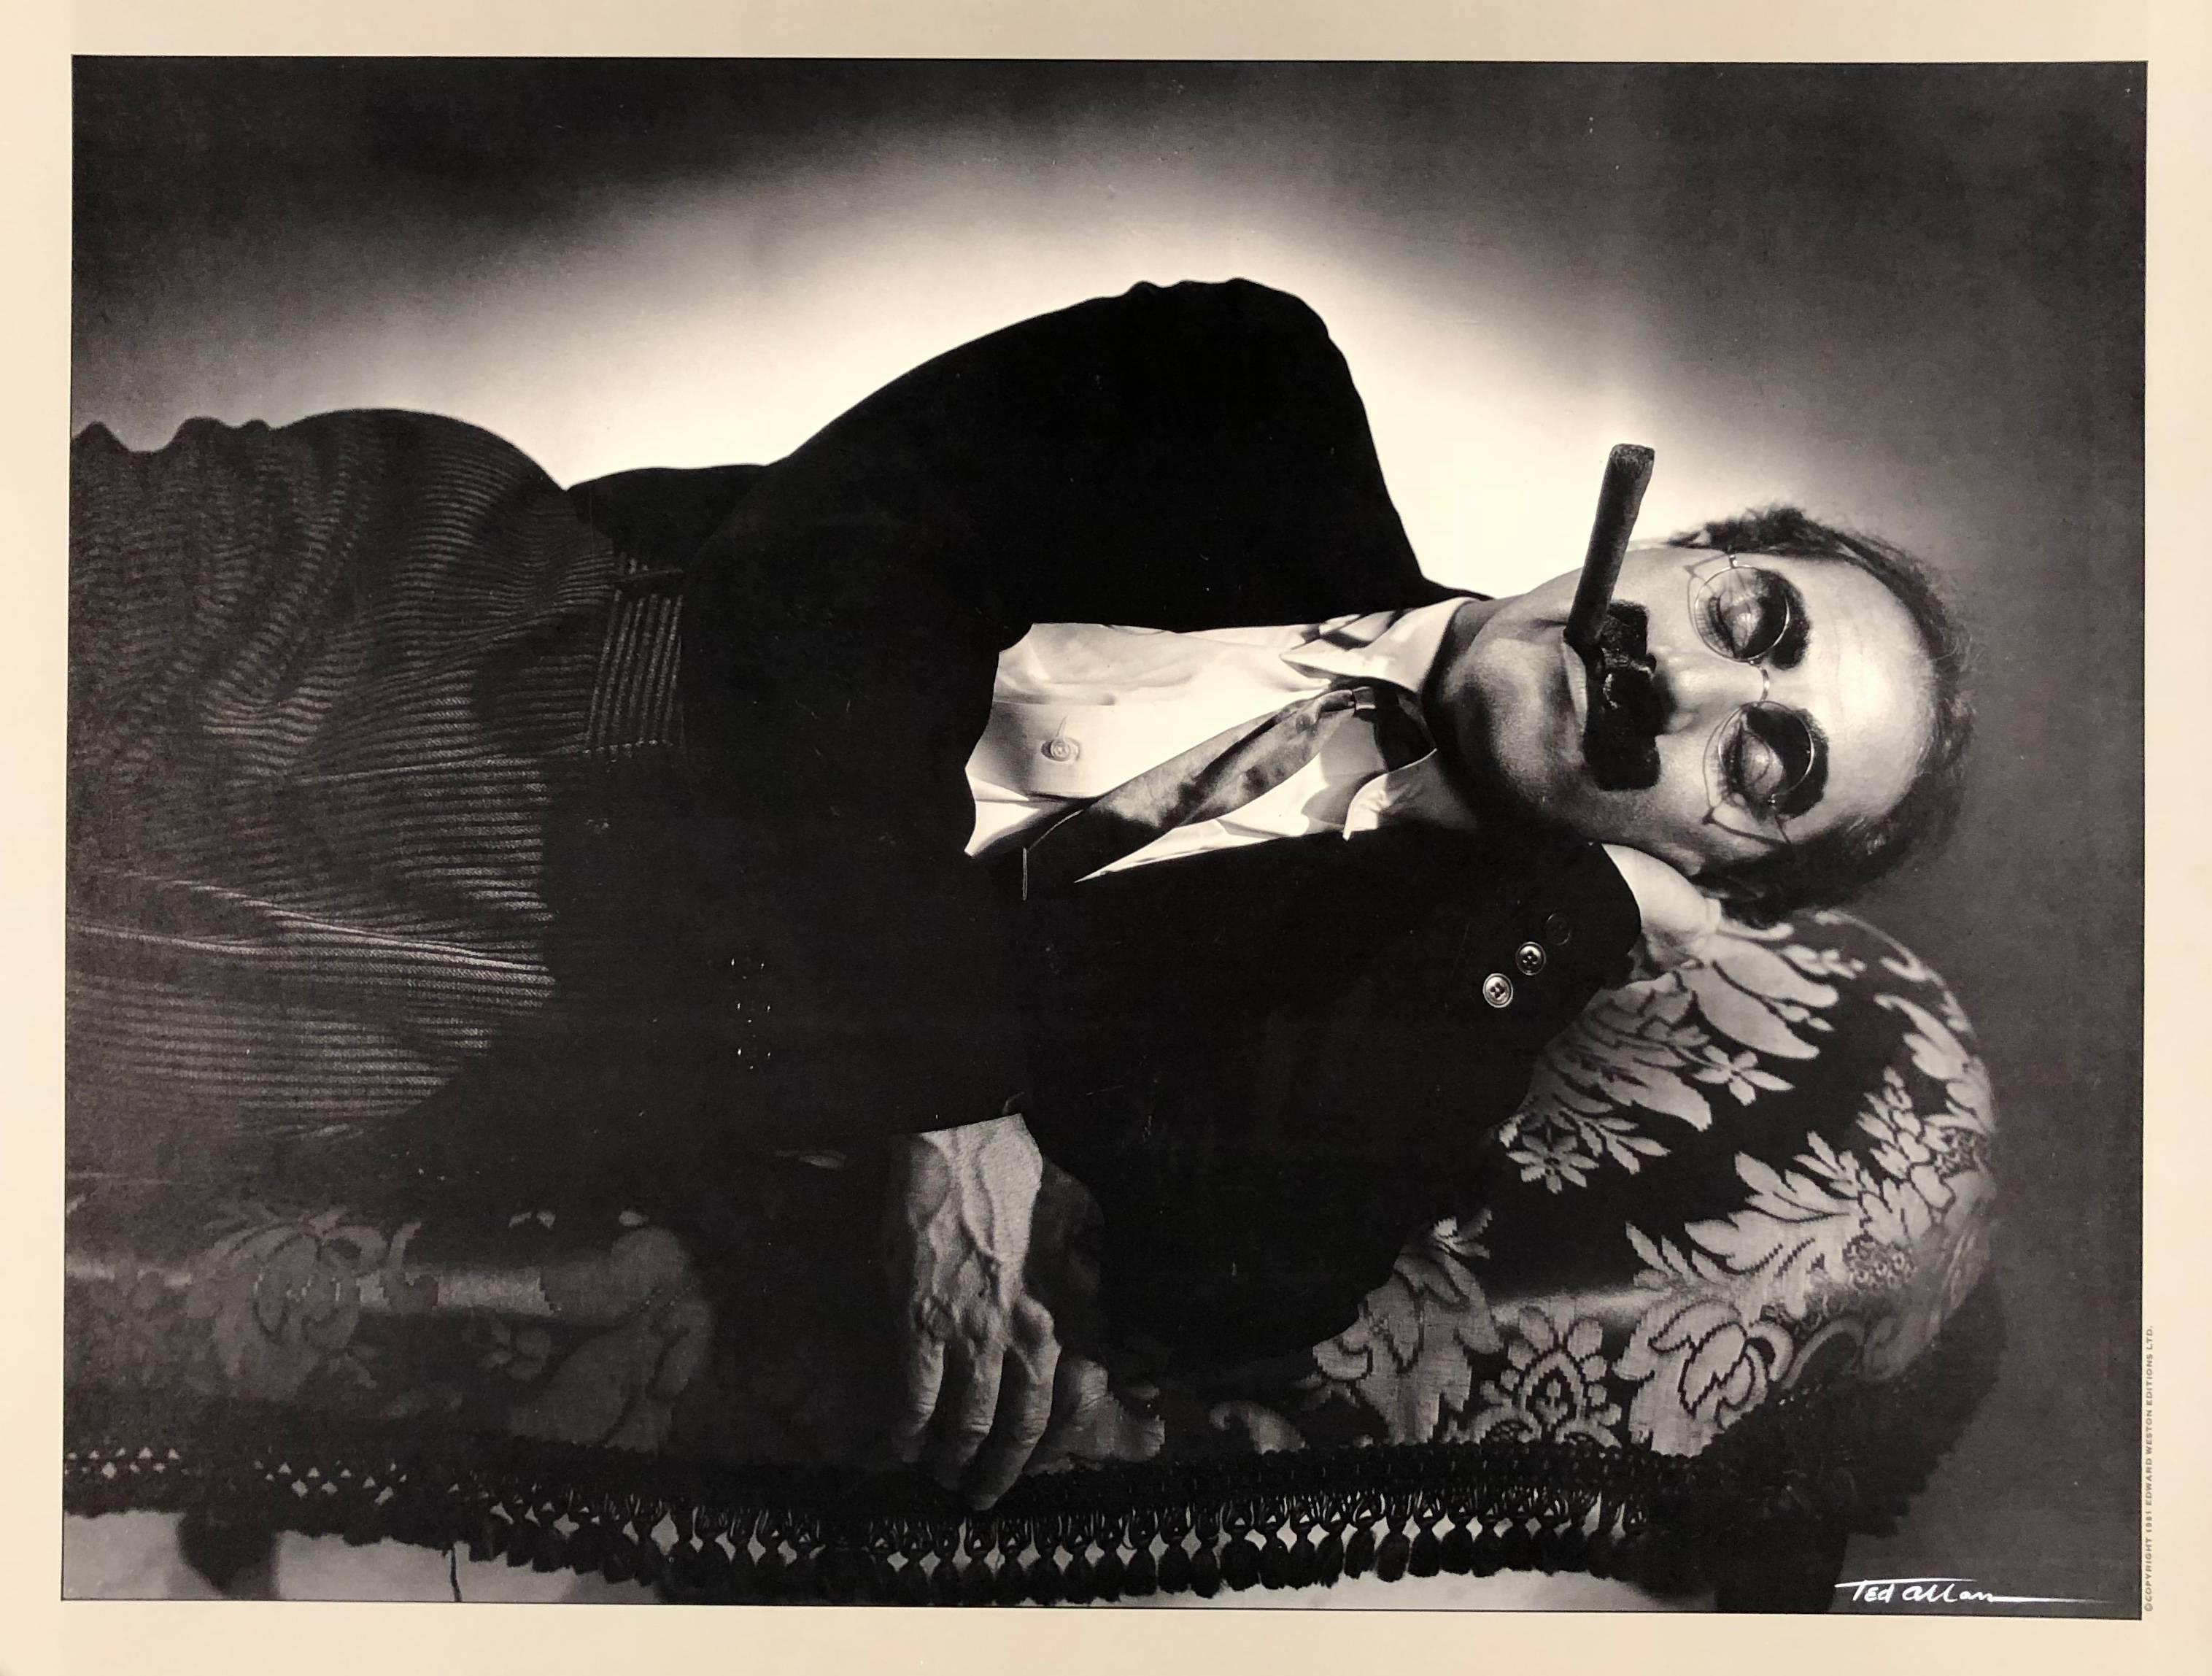 Dieses Werk ist eine Fotolithografie nach dem Originalnegativ von Ted Allan, das ursprünglich 1935 aufgenommen und später gedruckt wurde.  Es zeigt Julius Henry Marx, bekannt als Groucho Marx, der ein amerikanischer Komiker, Schriftsteller, Bühnen-,